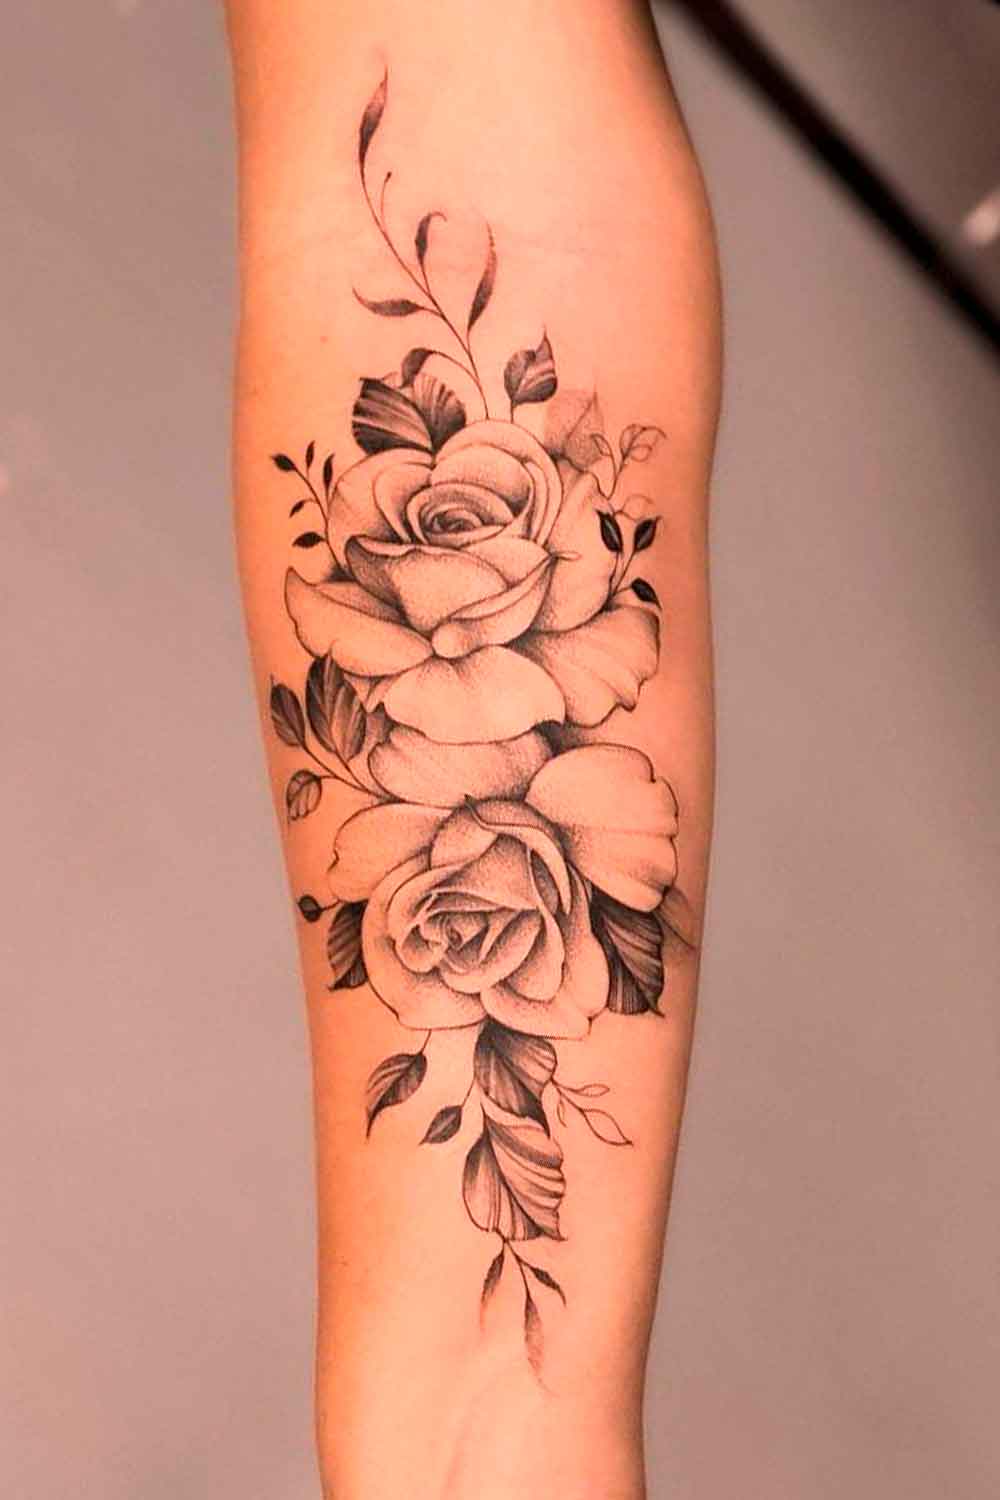 tatuagem-delicada-de-rosas-no-antebraco 